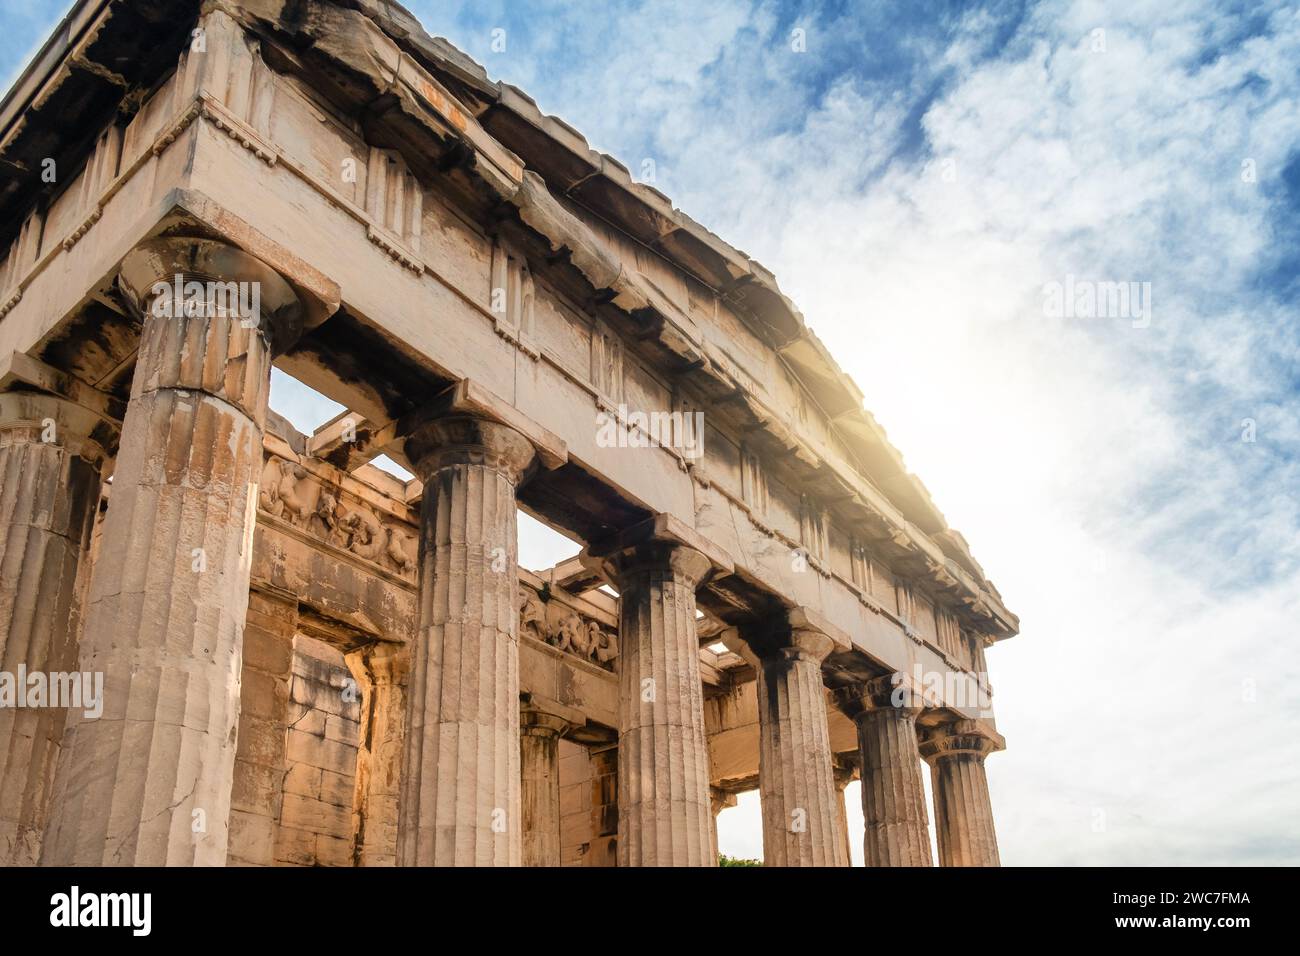 Temple d'Héphaïstos avec colonnade dorique dans l'Agora antique, Athènes, Grèce. Architecture grecque antique. Destination de voyage populaire Banque D'Images